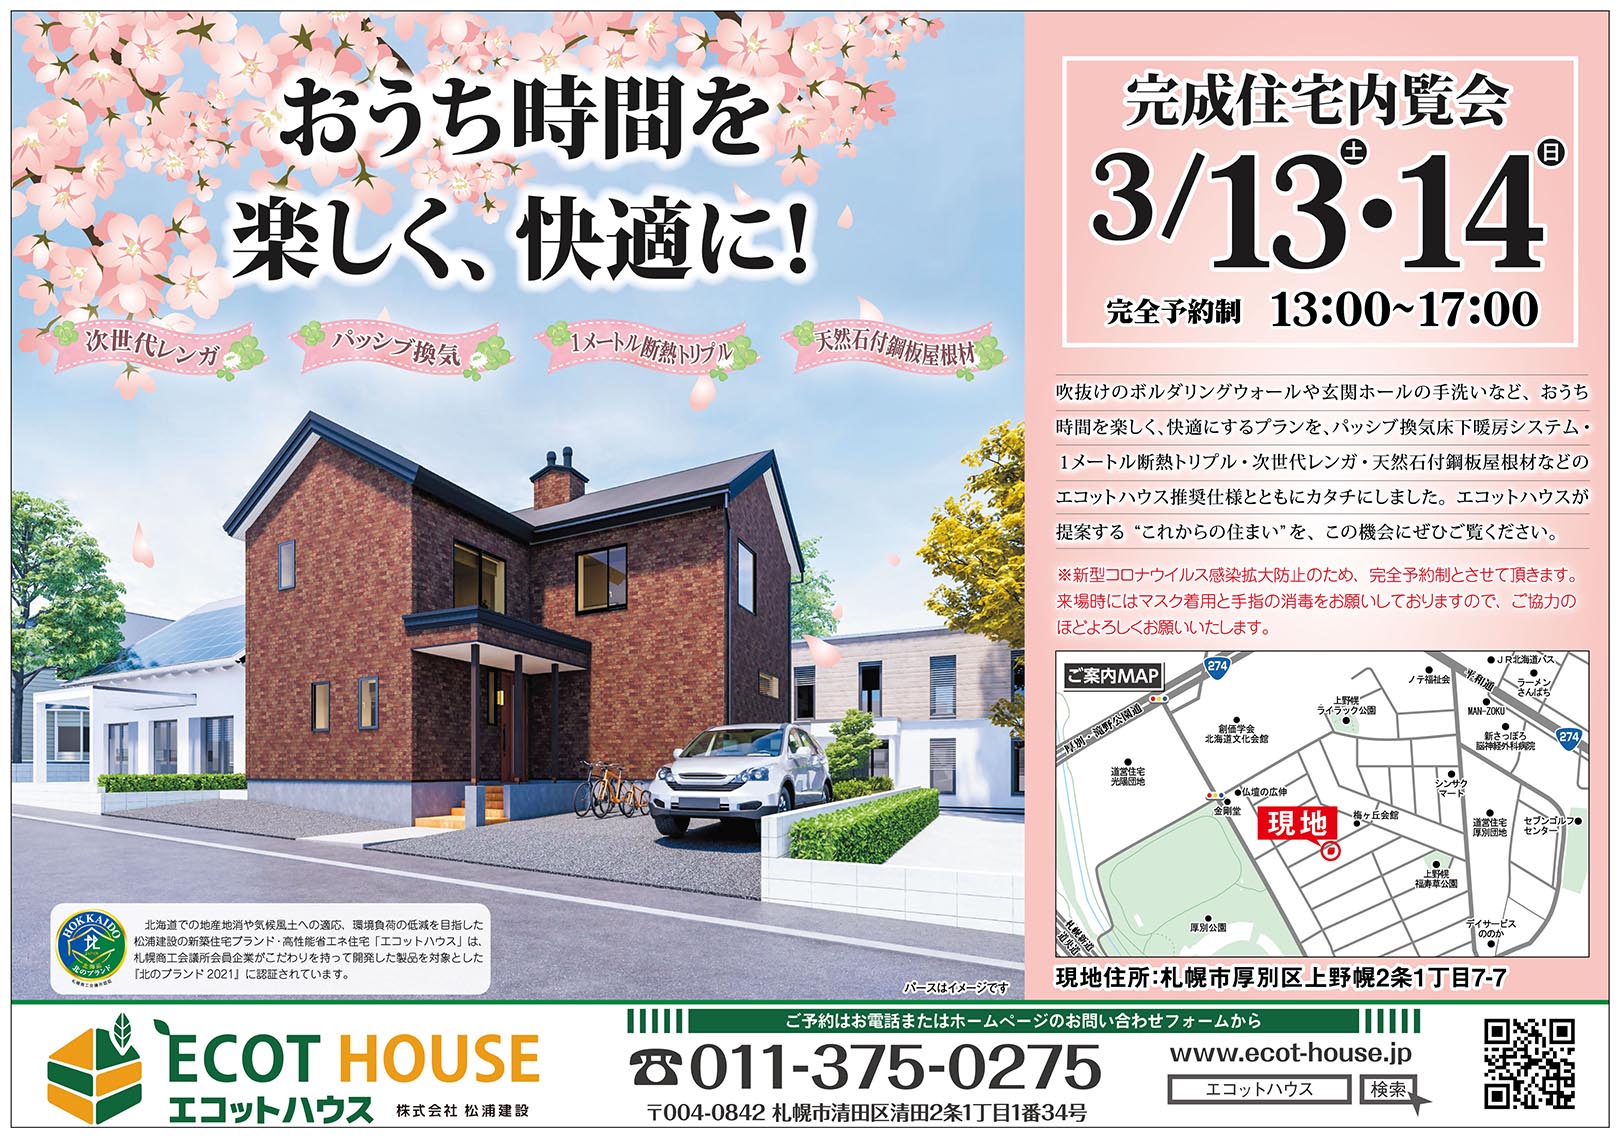 2 ３月新築内覧会のお知らせ 厚別区上野幌 エコットハウス